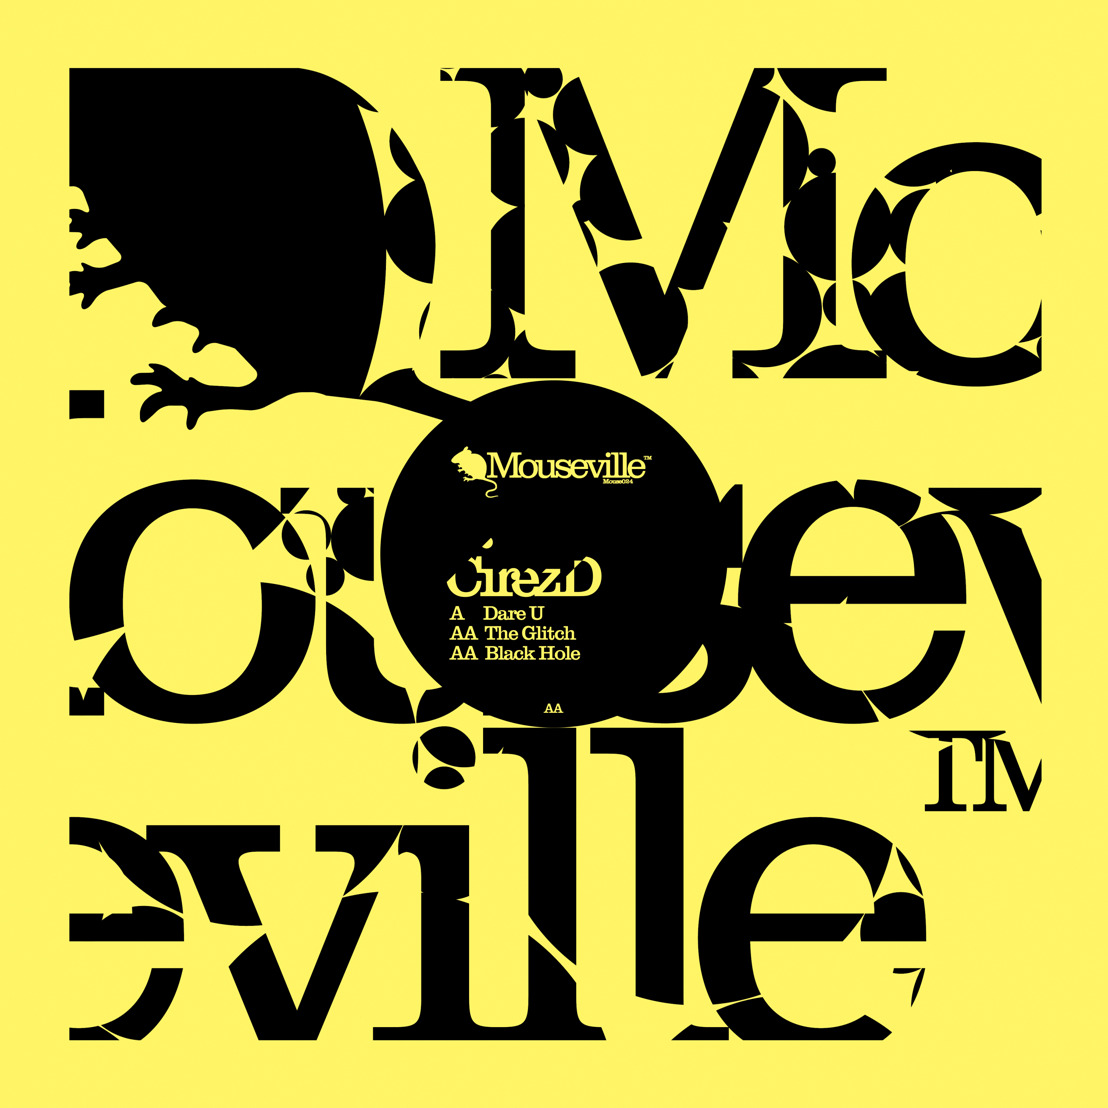 Eric Prydz releases new Cirez D EP - DARE U